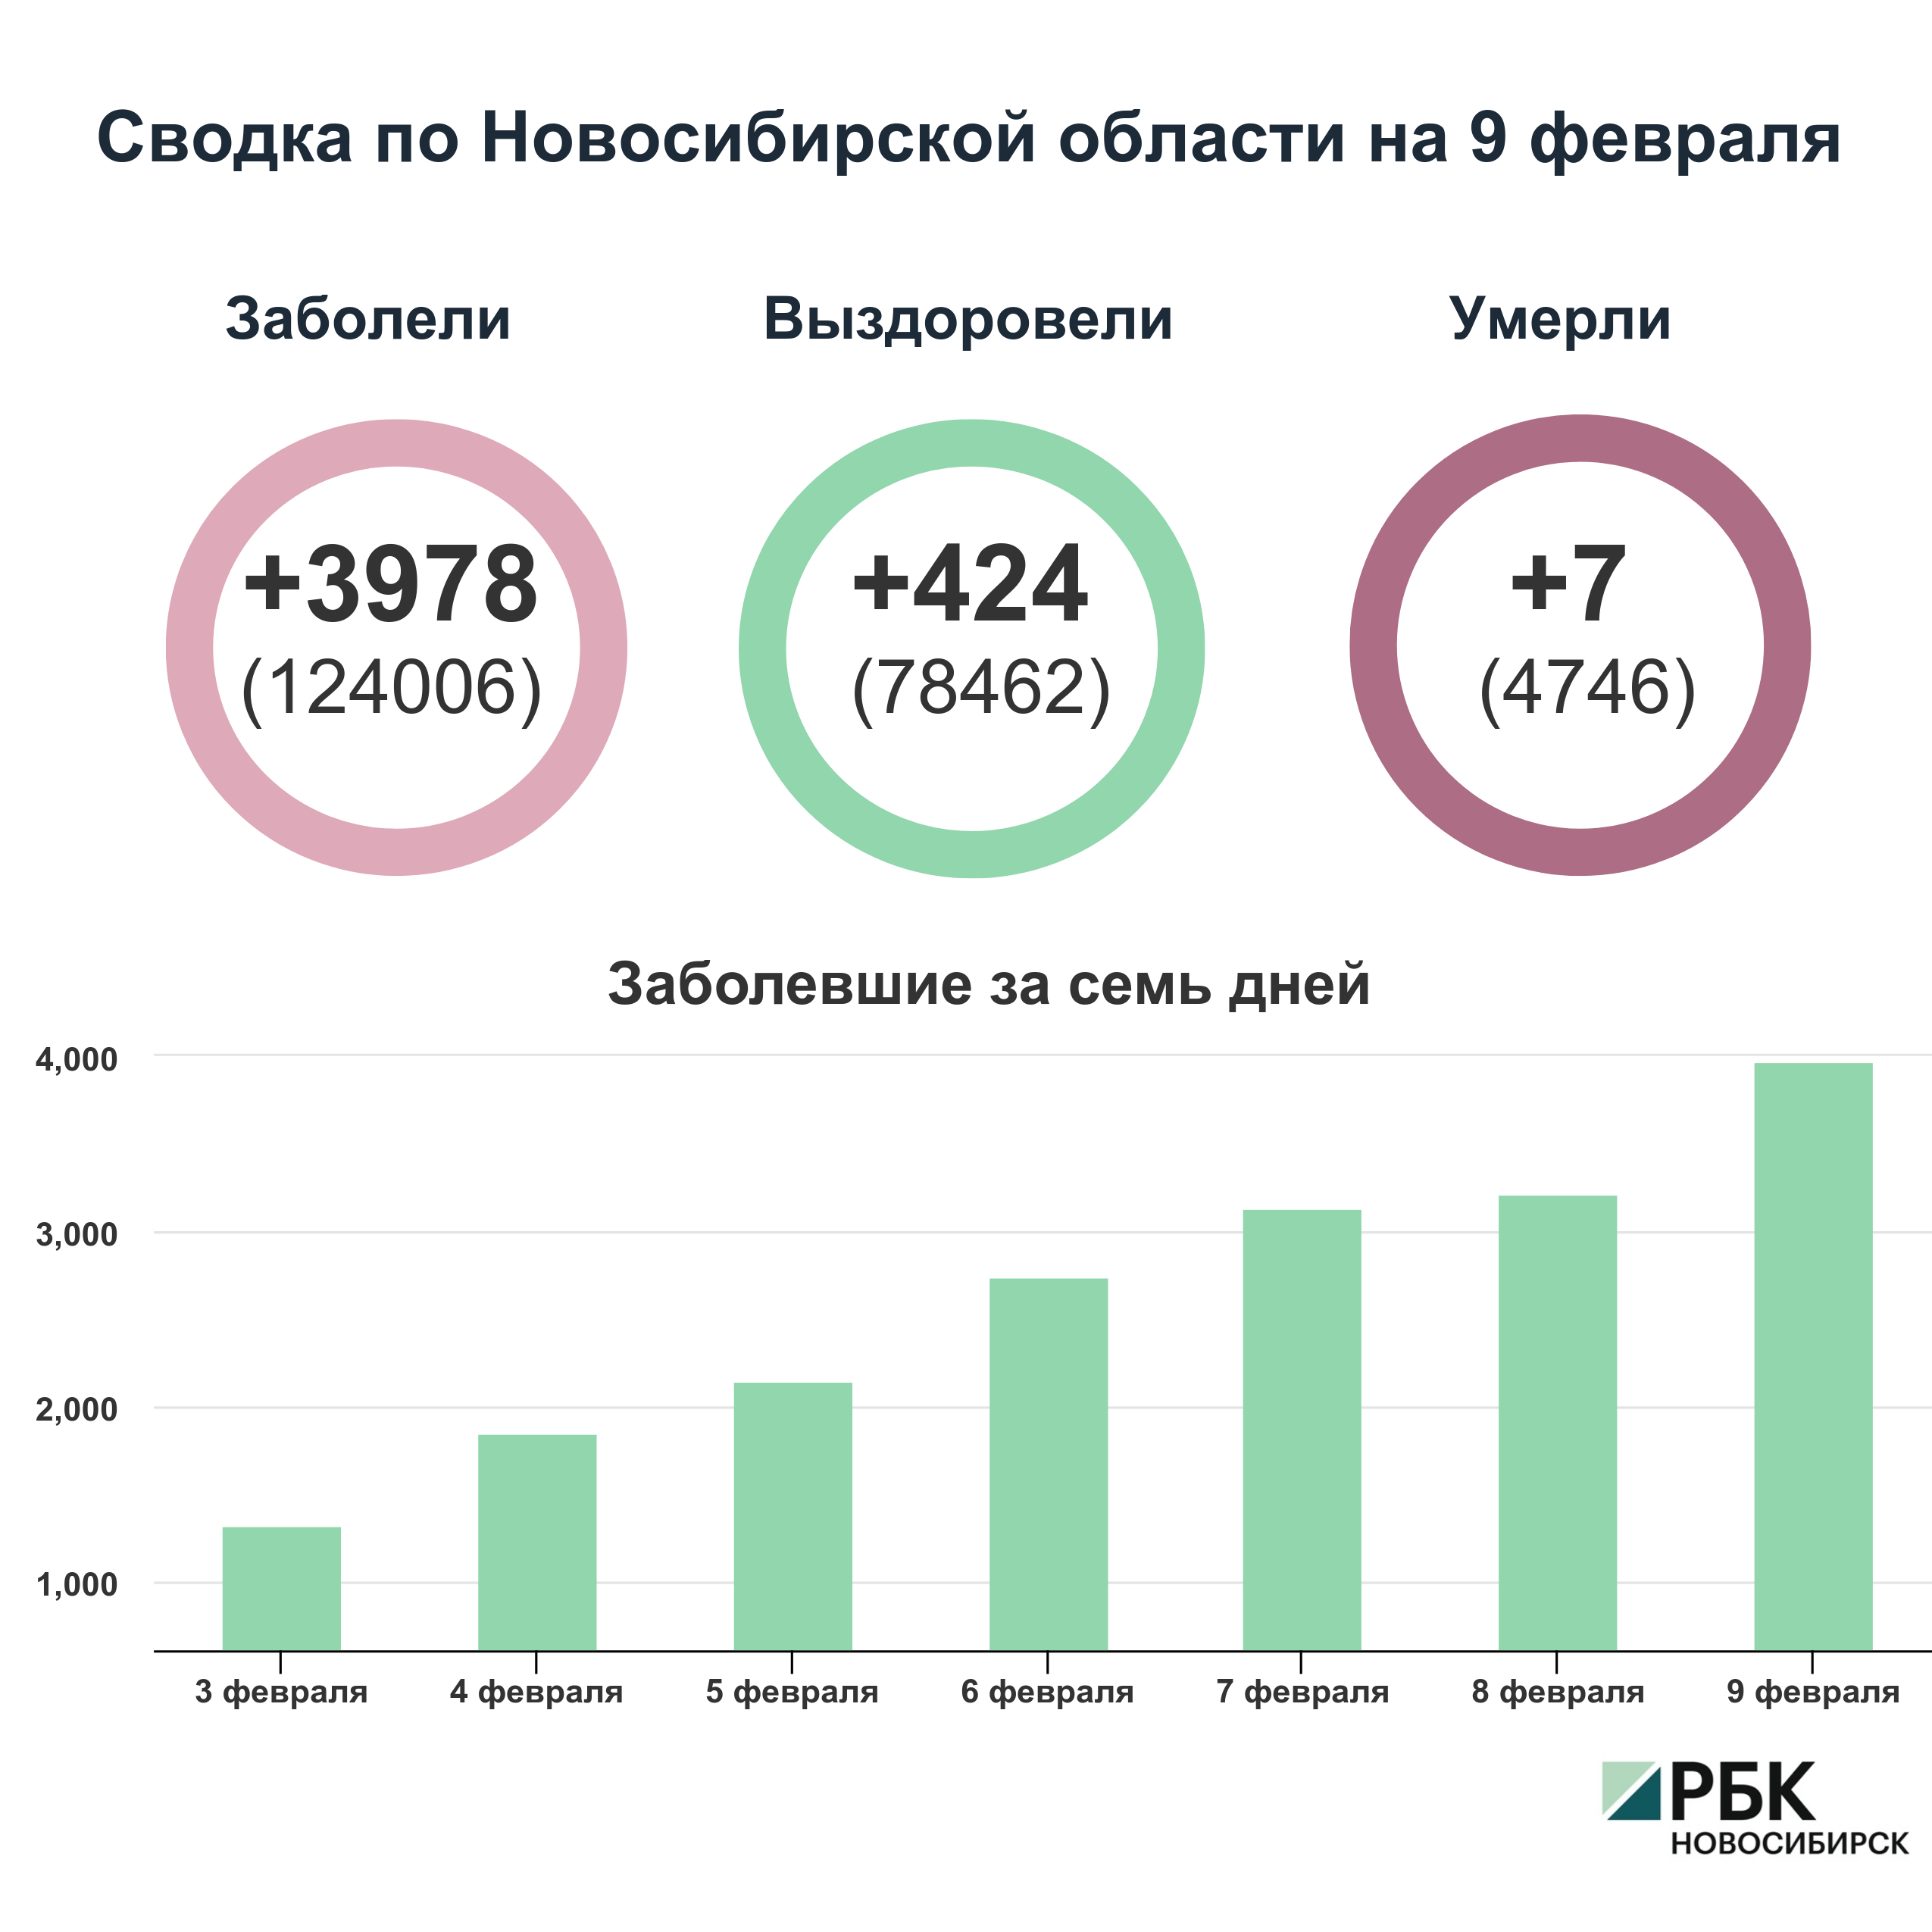 Коронавирус в Новосибирске: сводка на 9 февраля